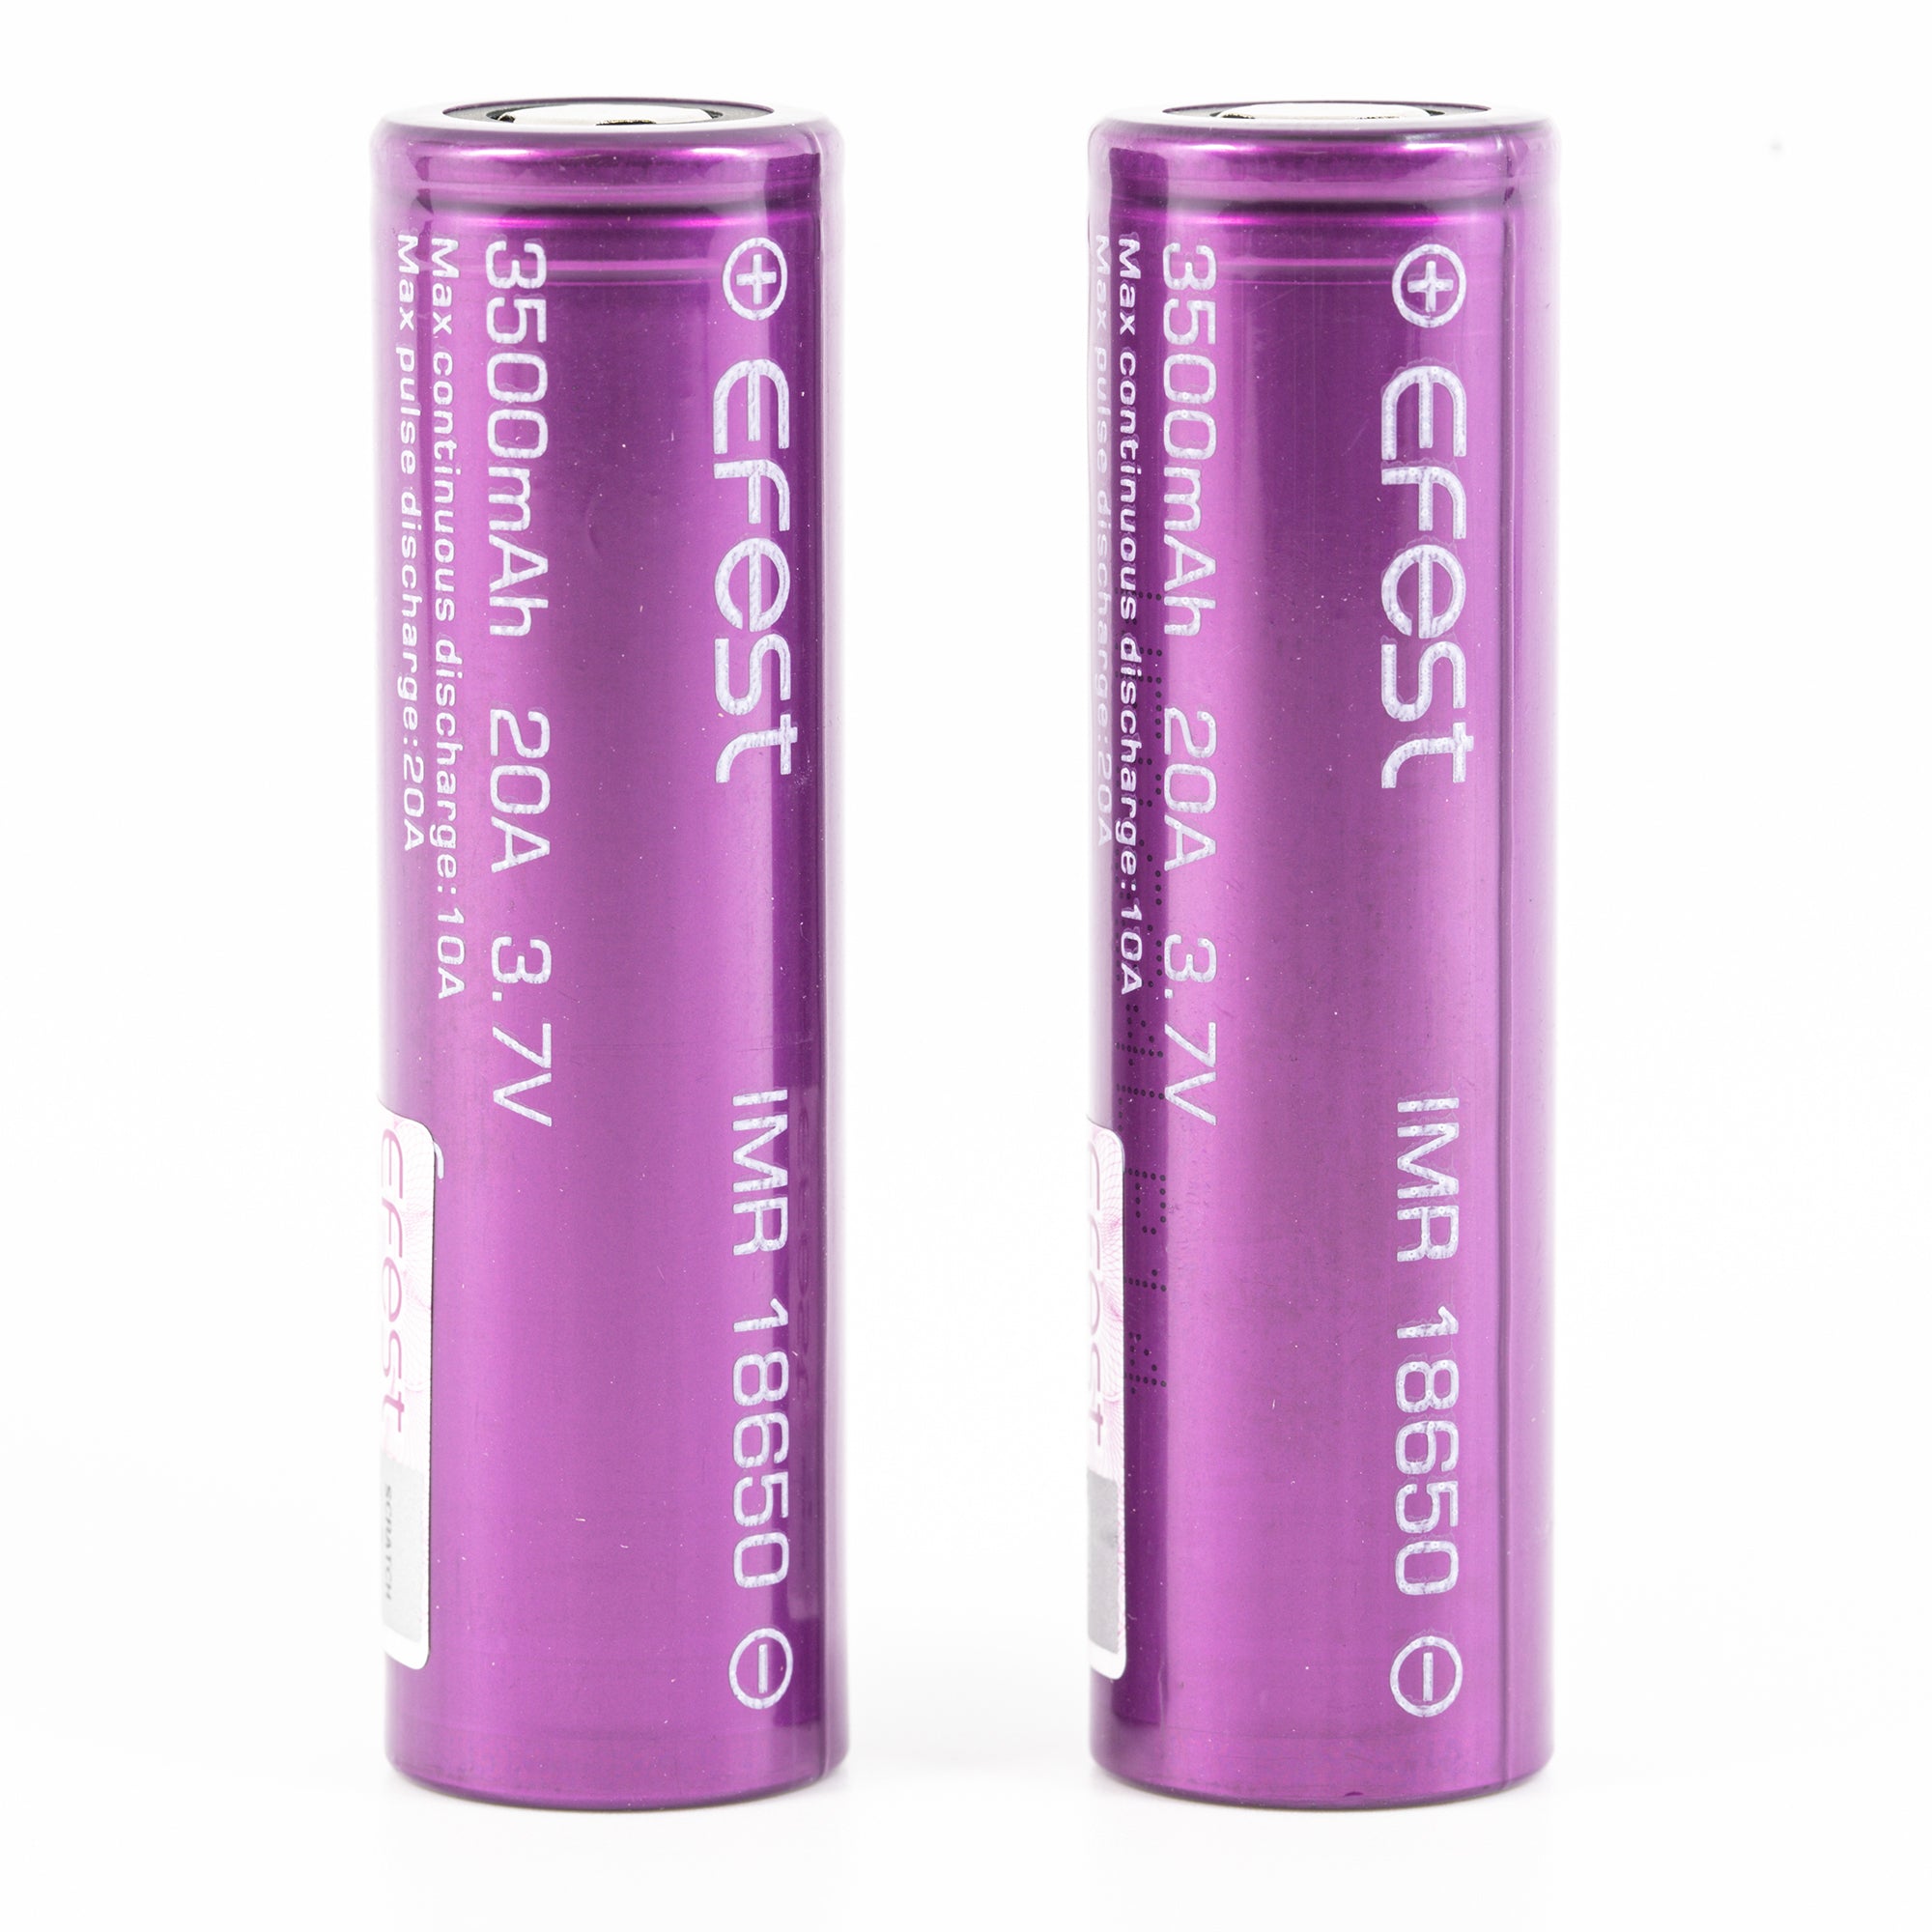 Efest IMR 18650 3500mAh 10A/20A Lithium Li-Ion Rechargeable Battery (2pc) [DG]